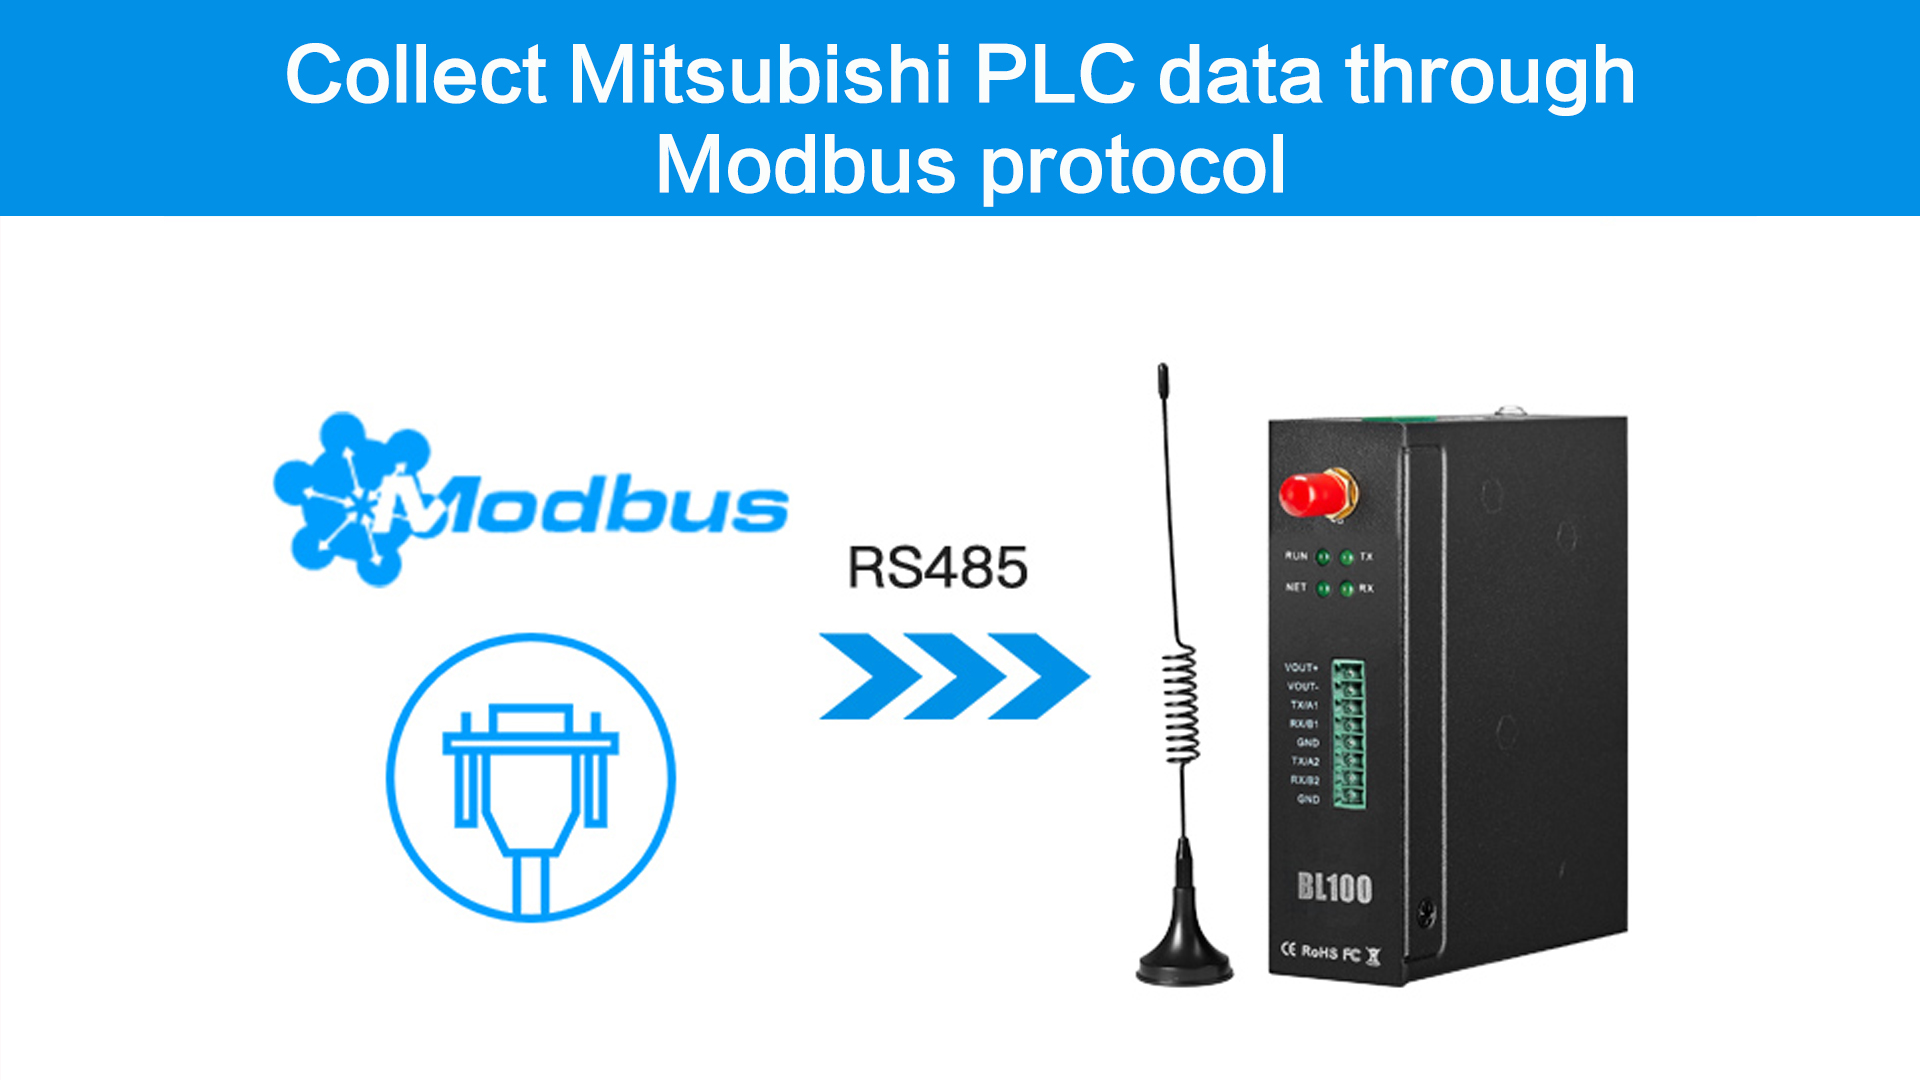 BLIIoT|BL100 Recopile datos del PLC Mitsubishi a través del protocolo Modbus